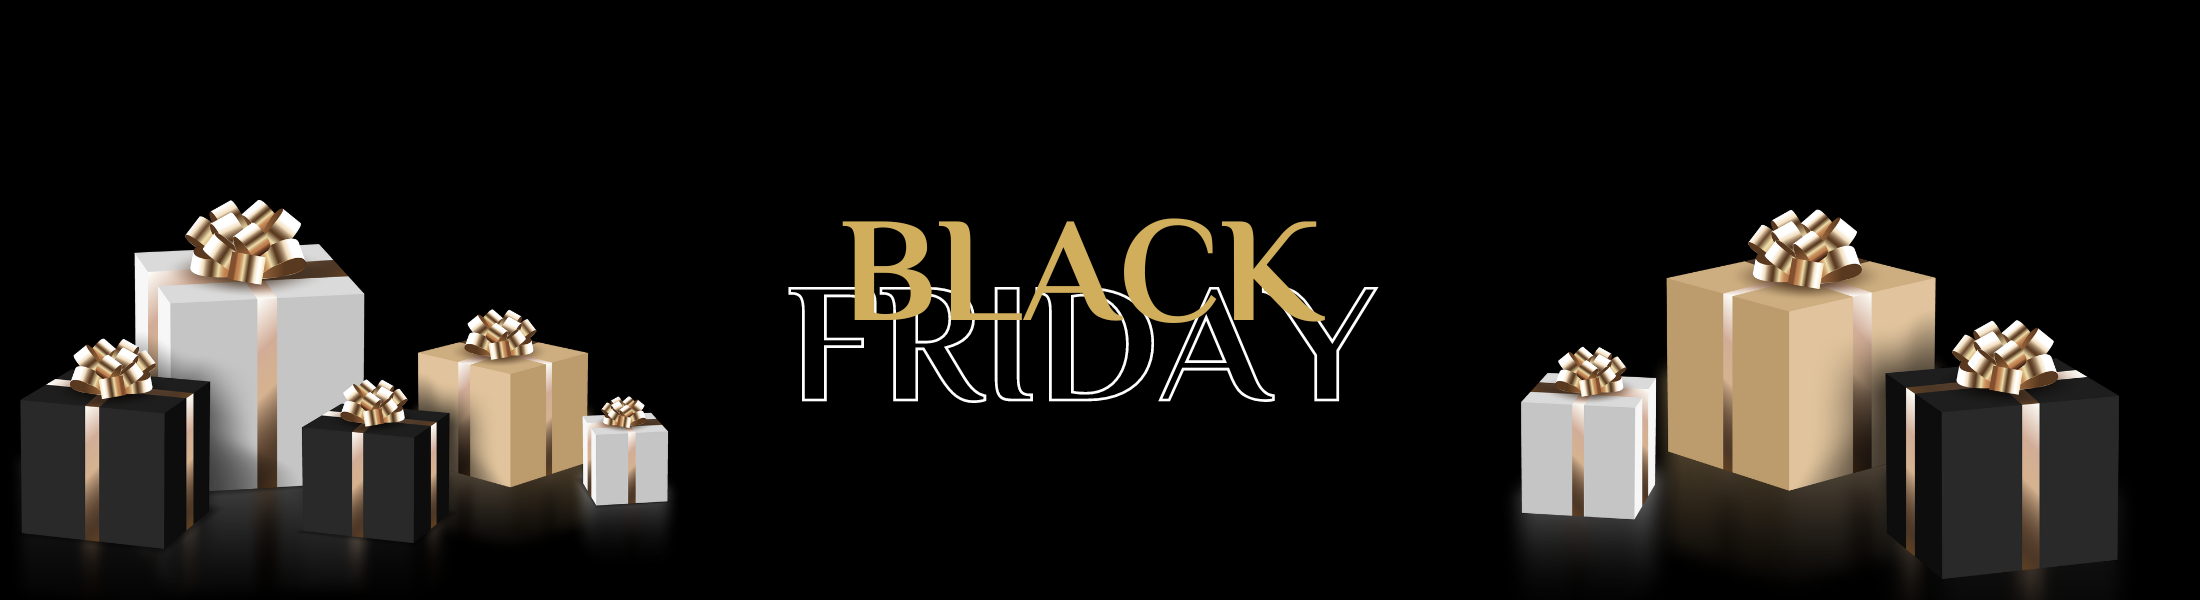 Profitez de l'Offre Black Friday Exclusif